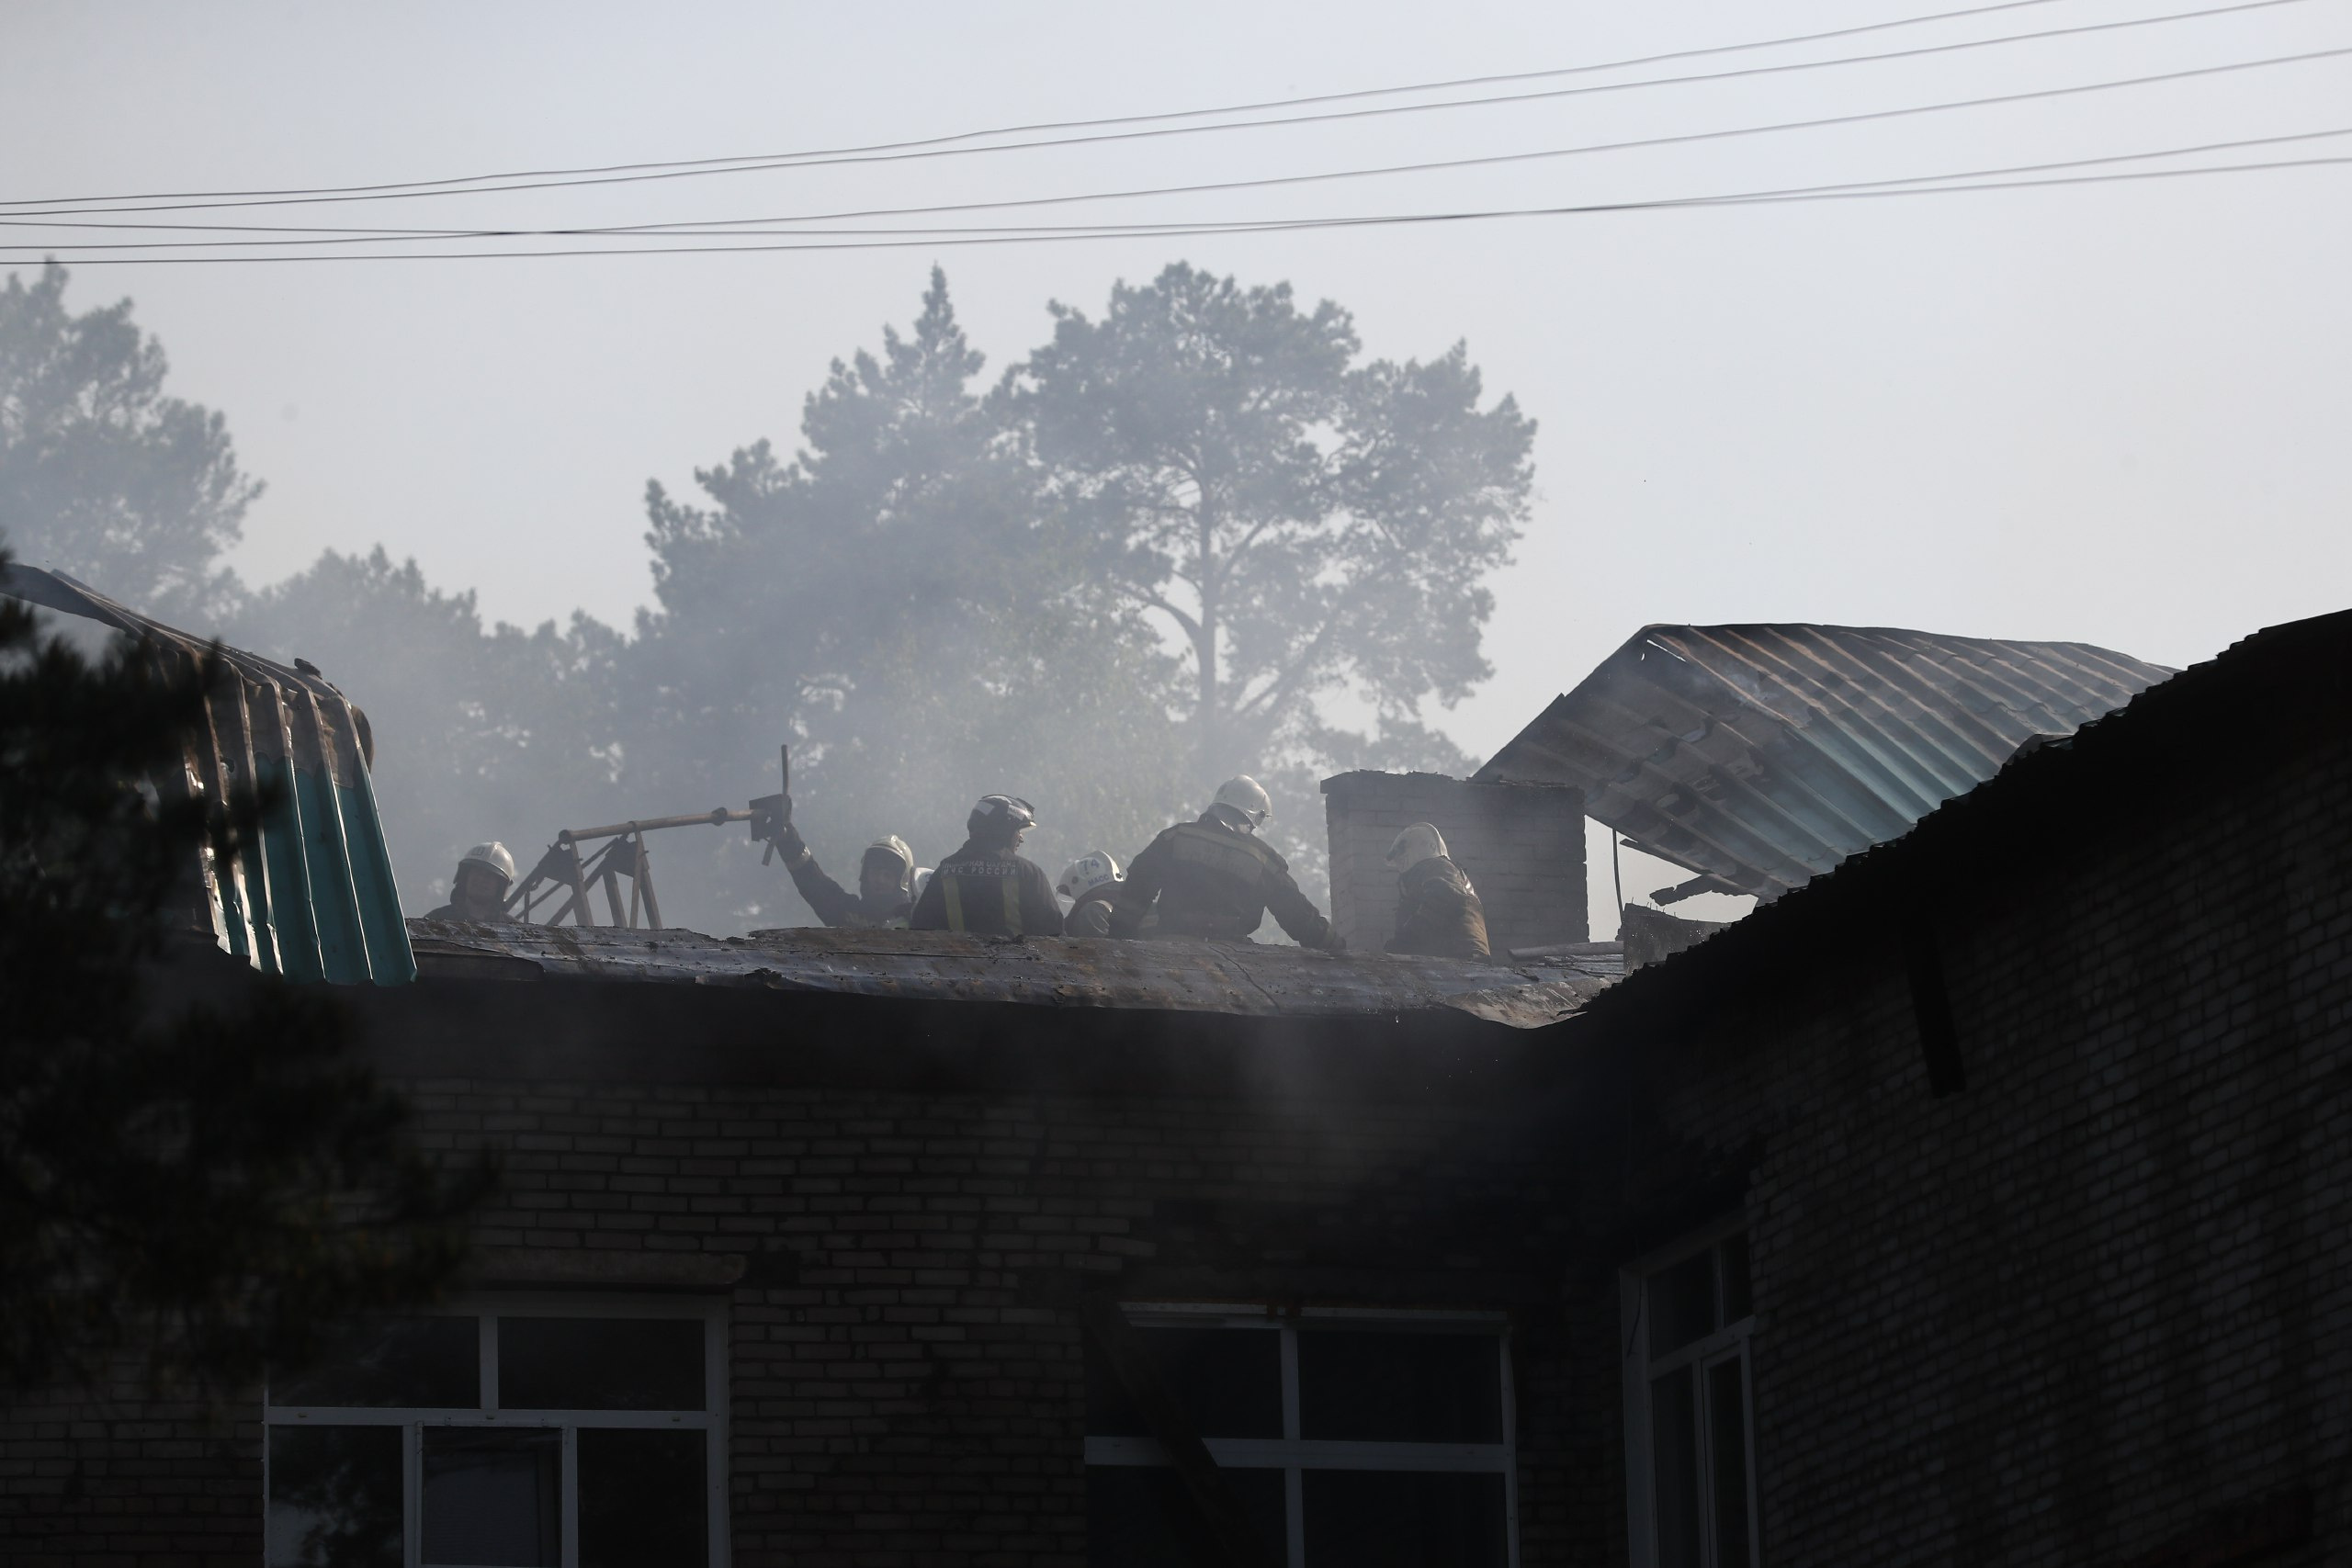 Эвакуация и причины возгорания: что известно о пожаре в больнице Новосибирска — в одном видео